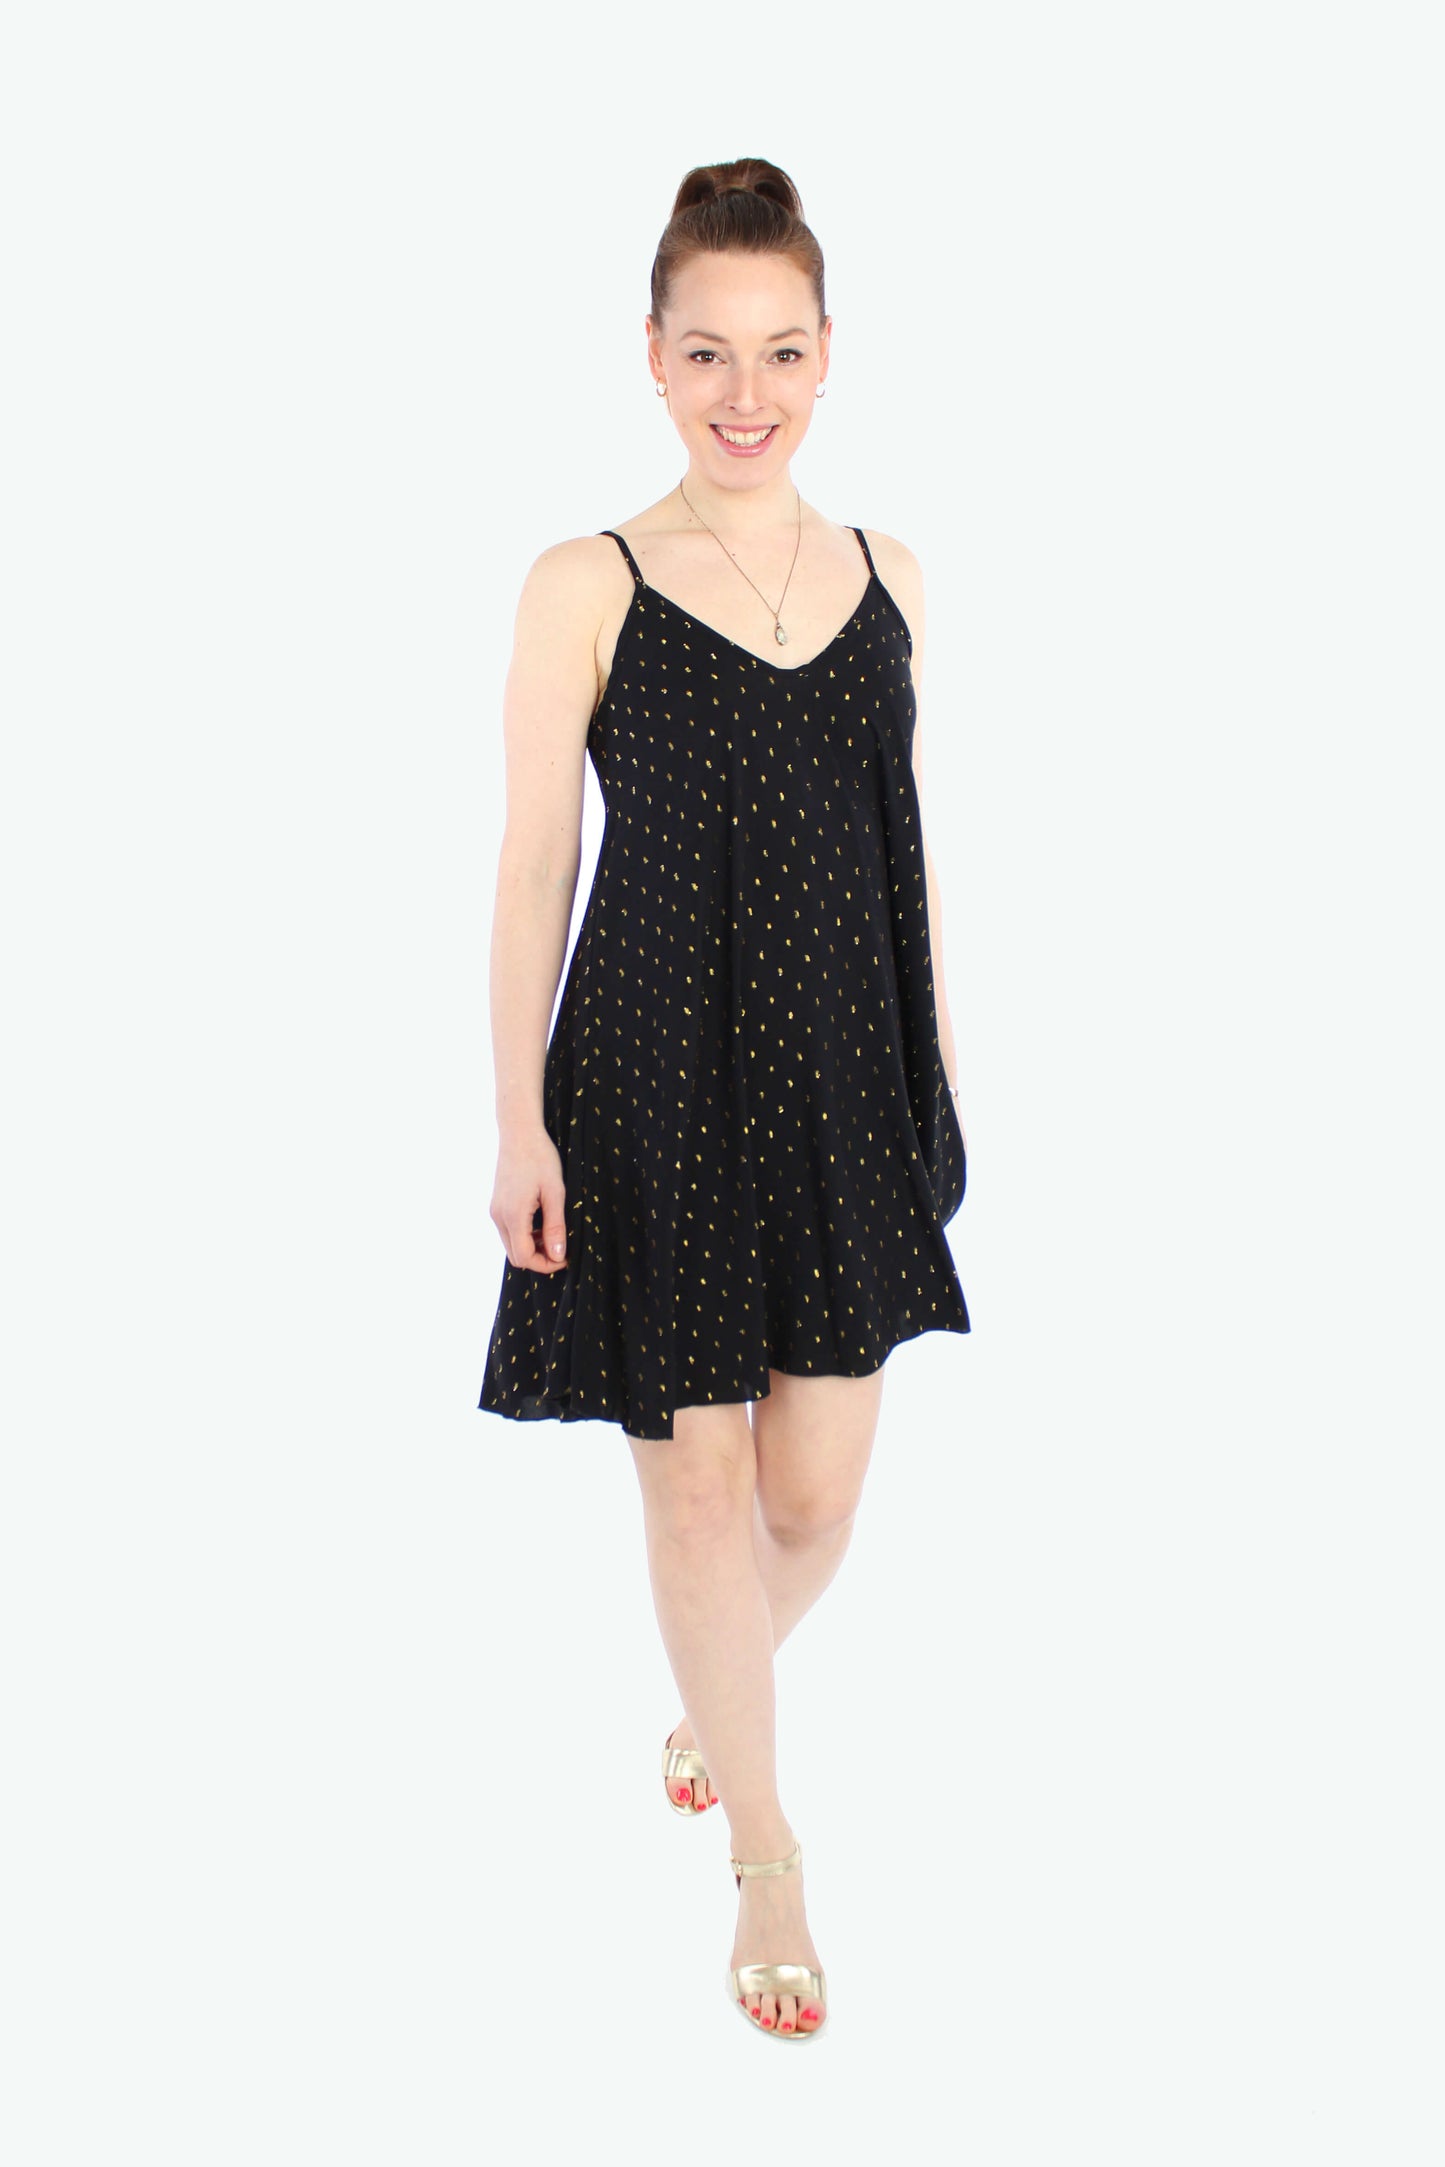 Frau, in einem lockeren Sommerkleid in Minilänge in schwarz mit goldenen Punkten. Das Trägerkleid besteht aus leichten Viskosestoff.